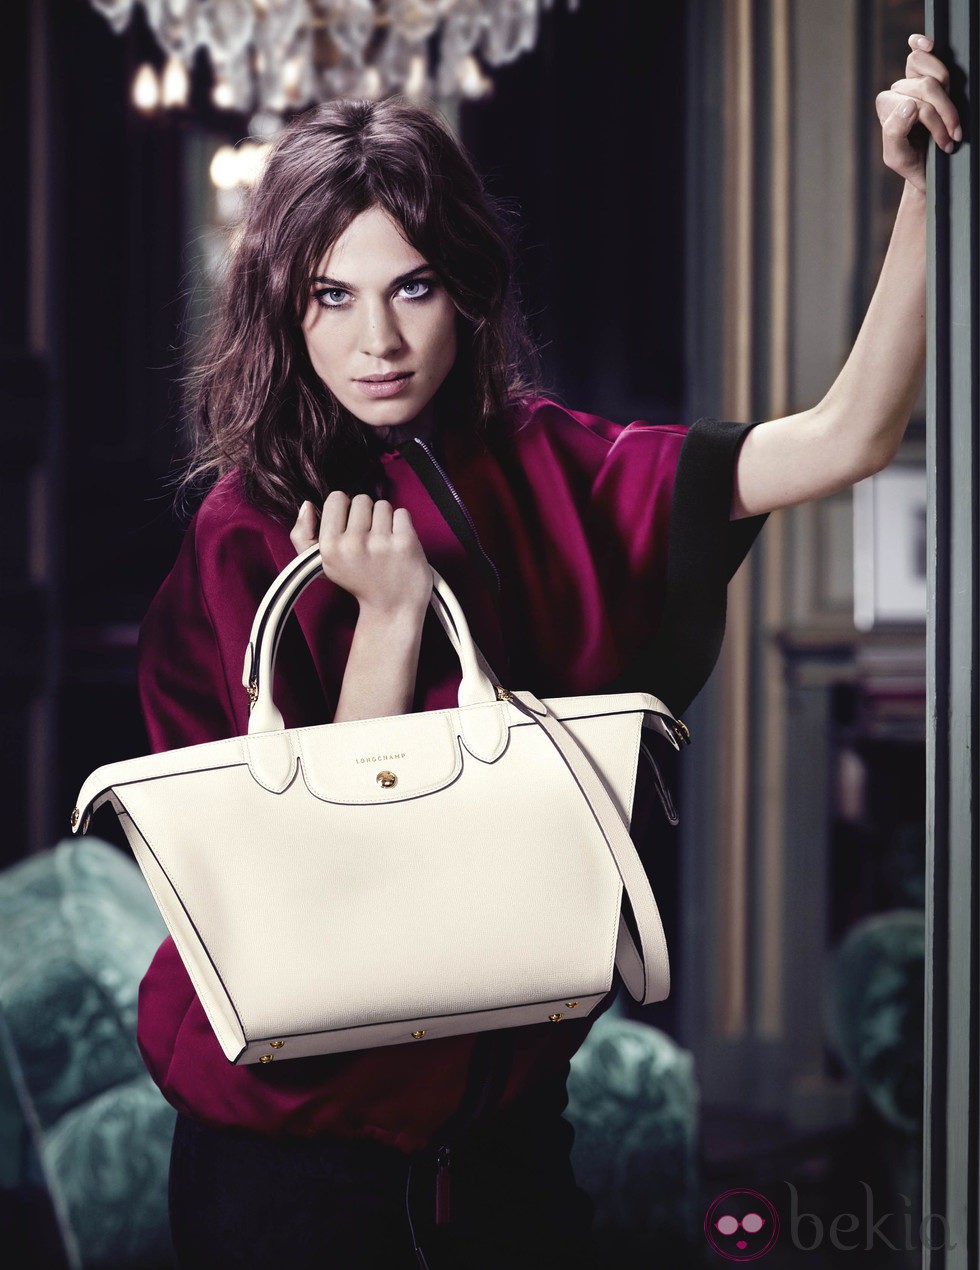 Alexa Chung protagoniza la nueva campaña de Longchamp para otoño 2014